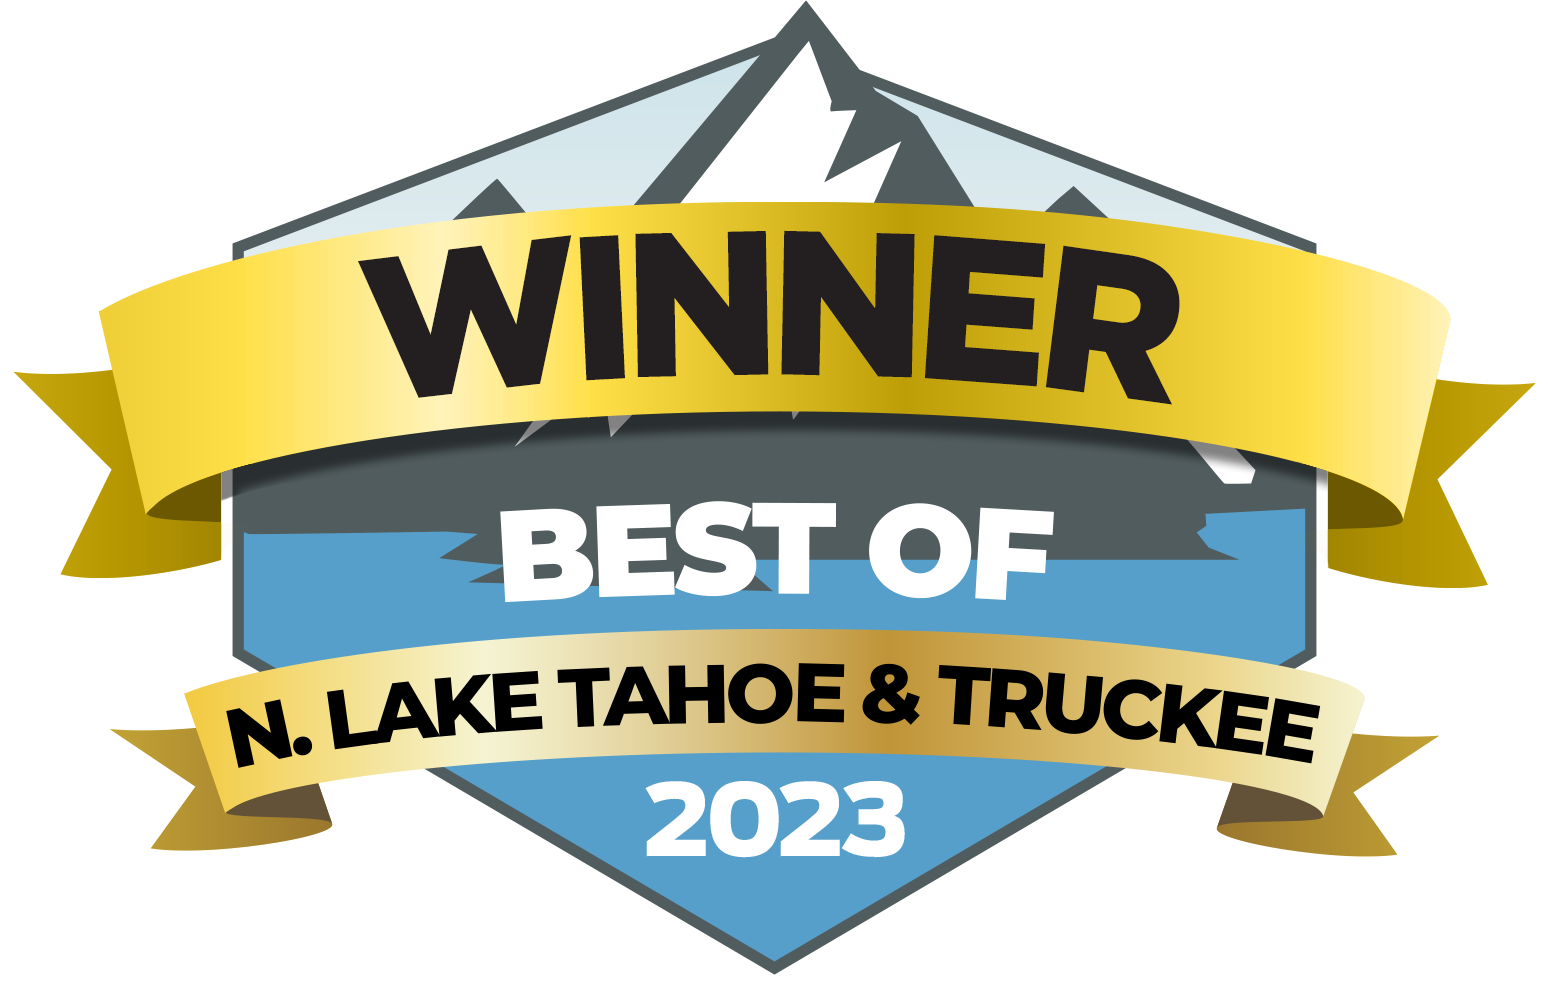 Best of N. Lake Tahoe & Truckee 2023 Winner